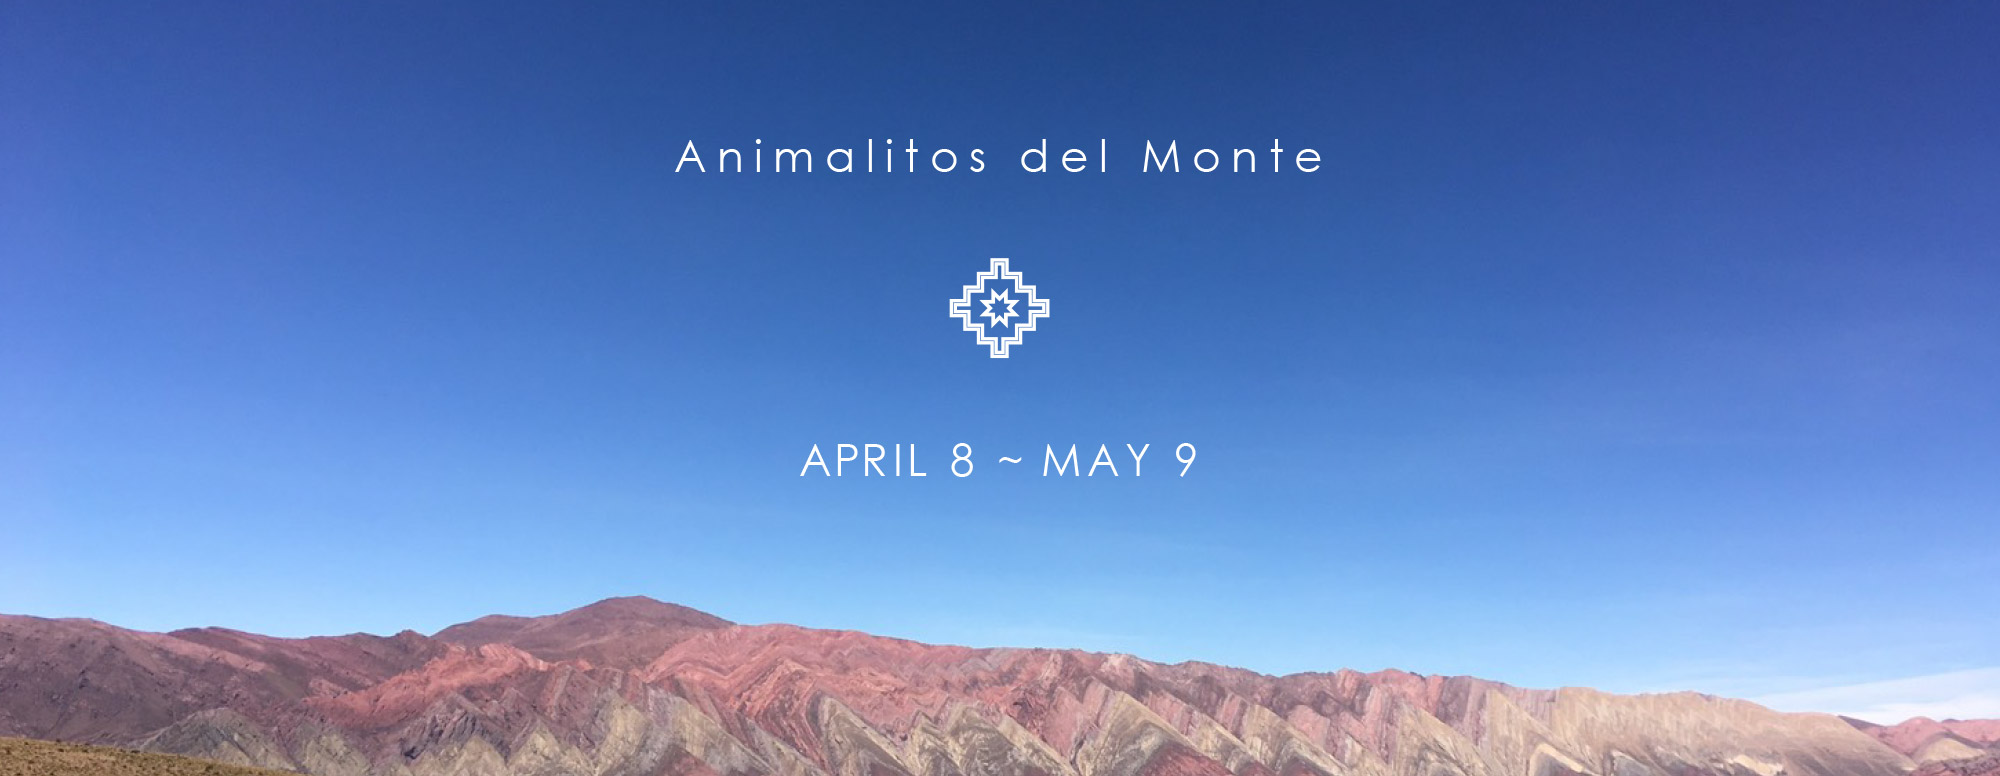 Animalitos del Monte exhibition